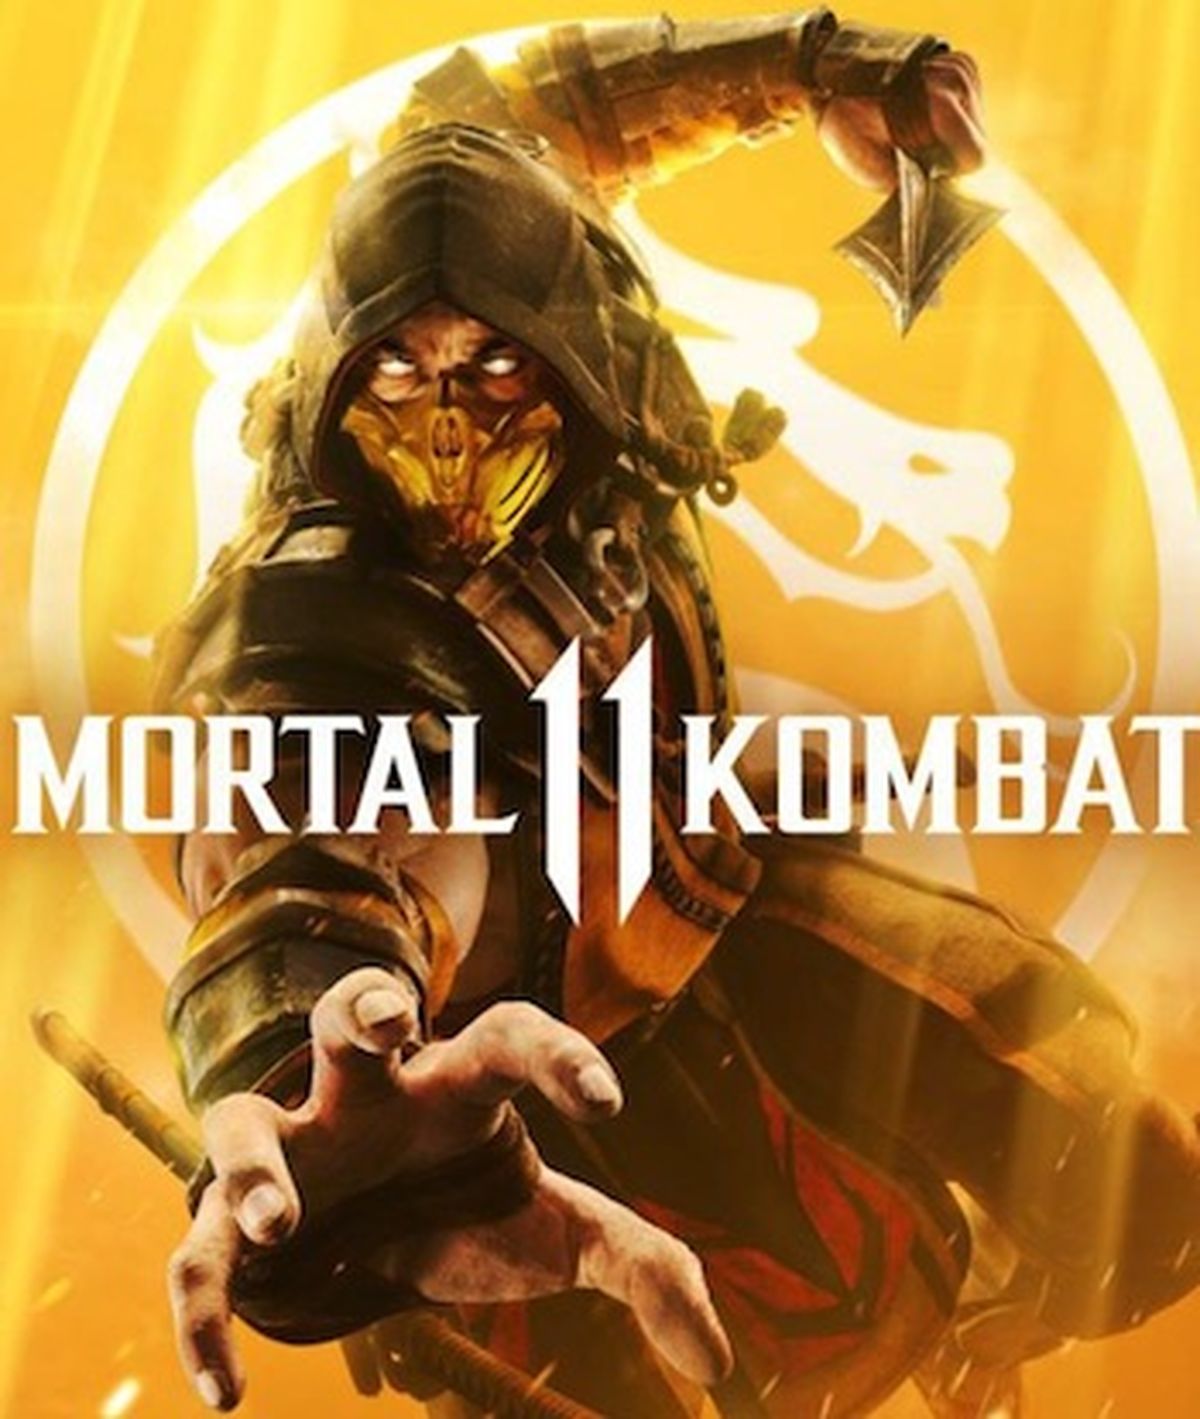 Todos los Fatalities de Mortal Kombat 11 Ultimate y cómo hacerlos